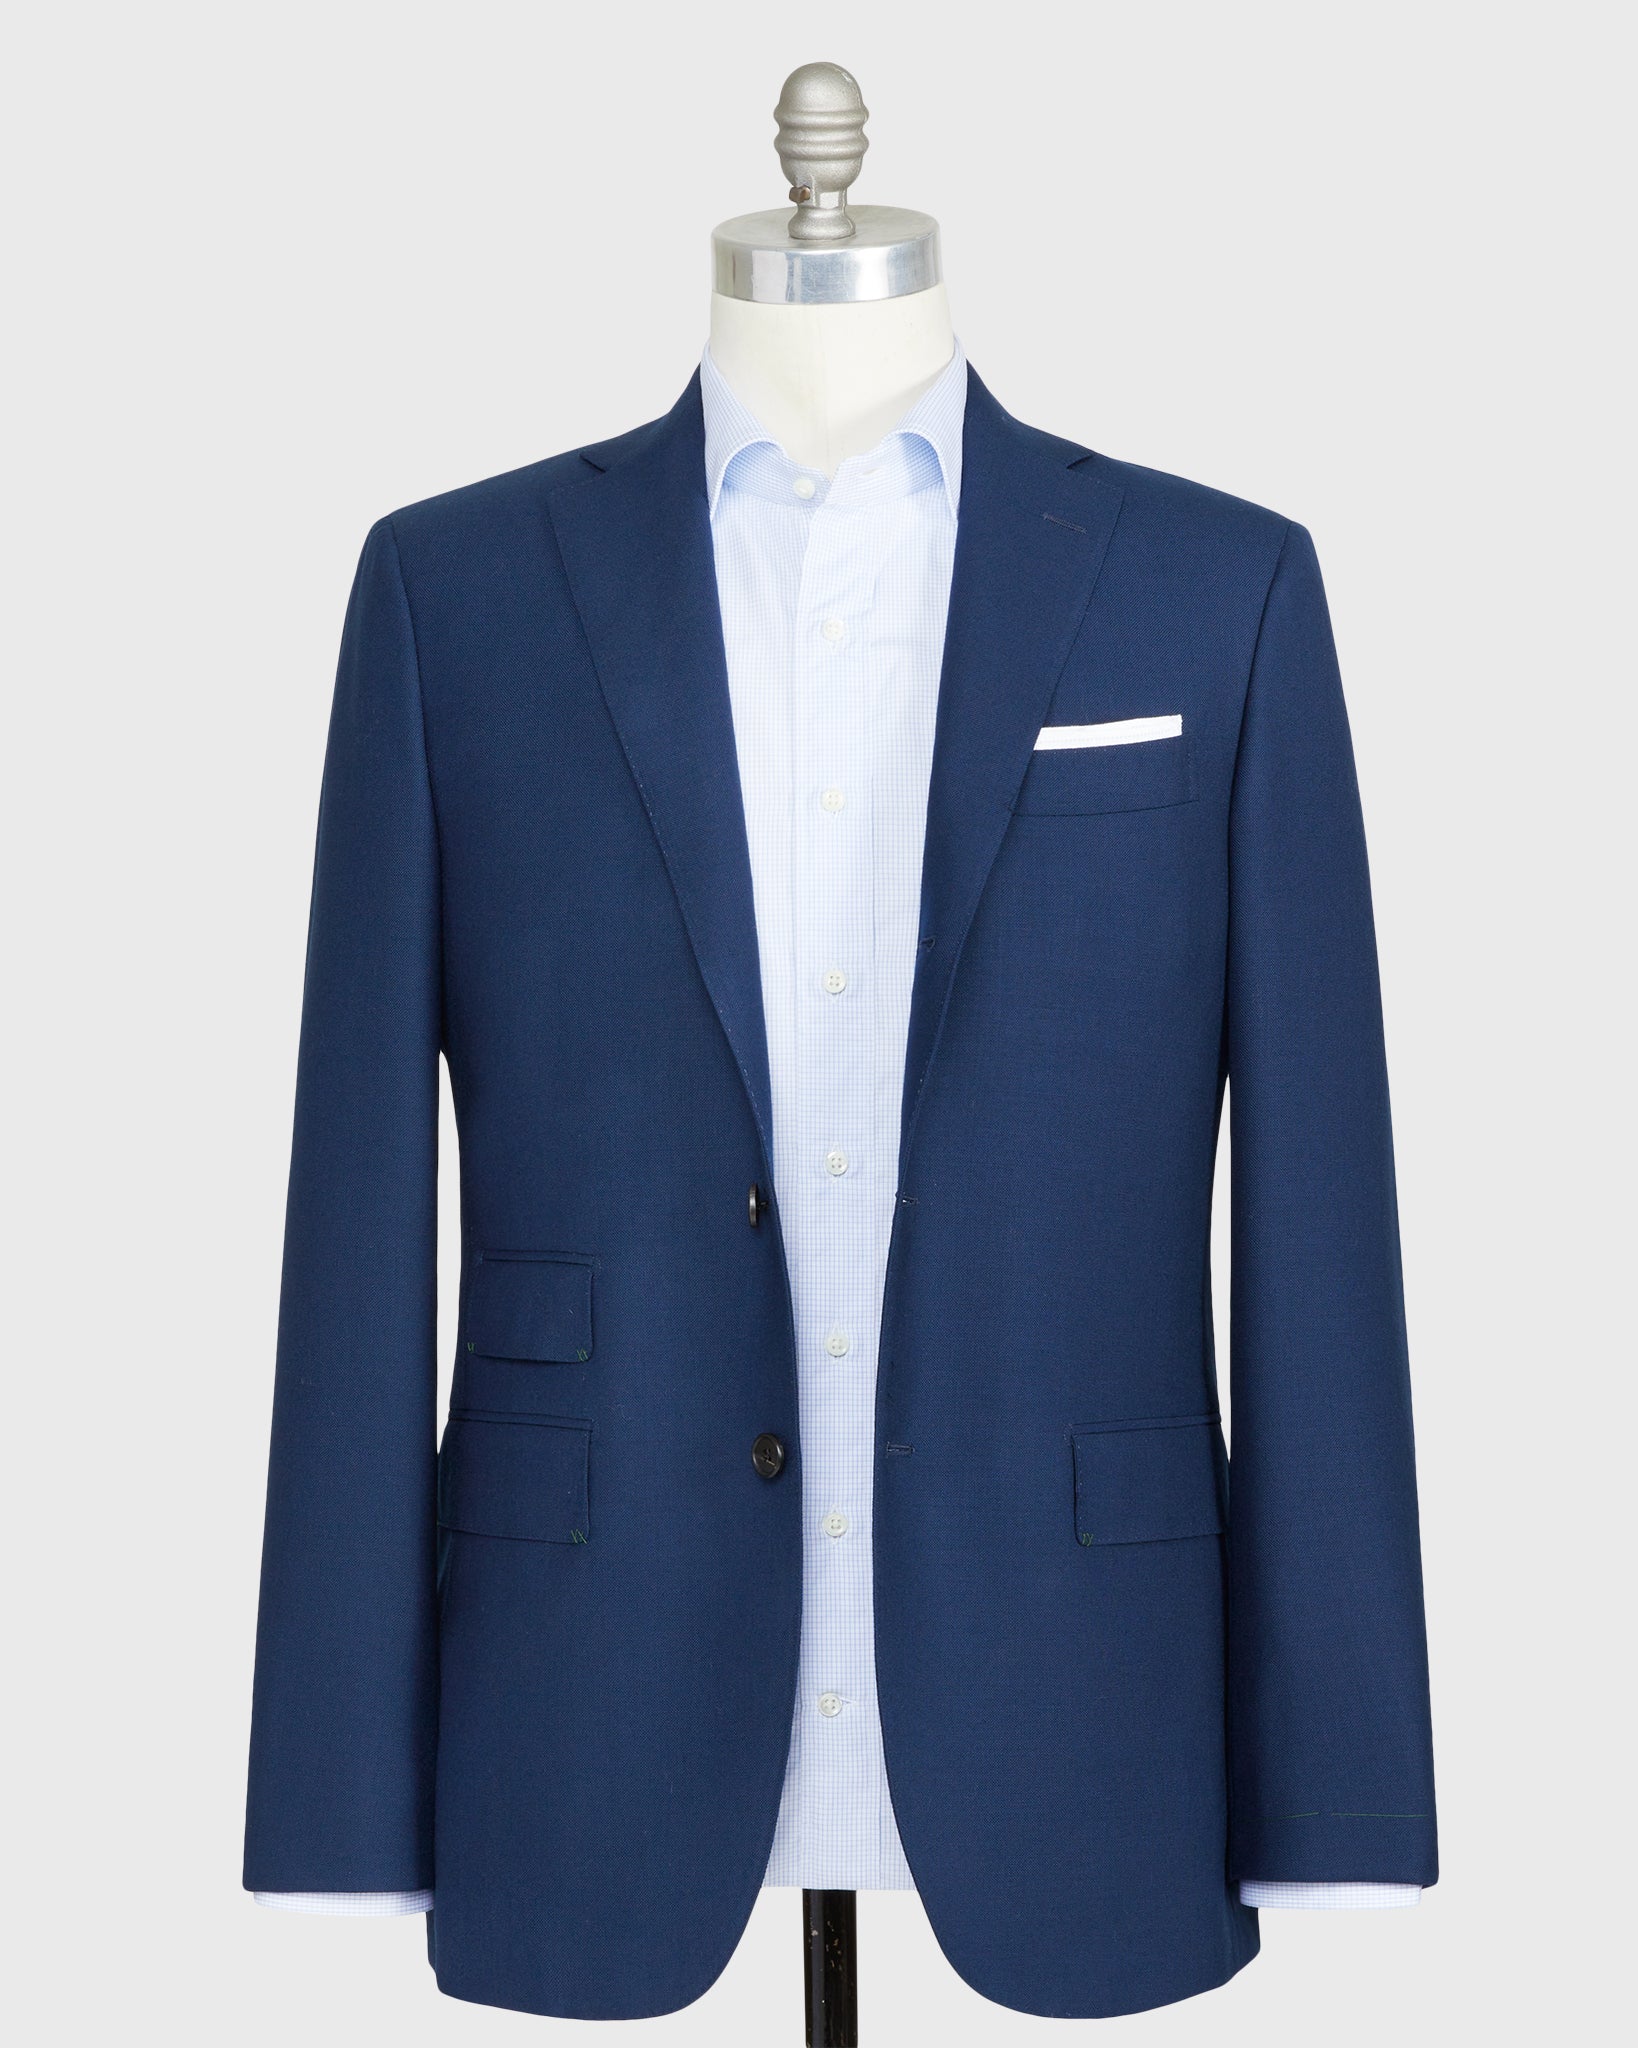 Virgil No. 3 Suit in Blue Tropical Wool